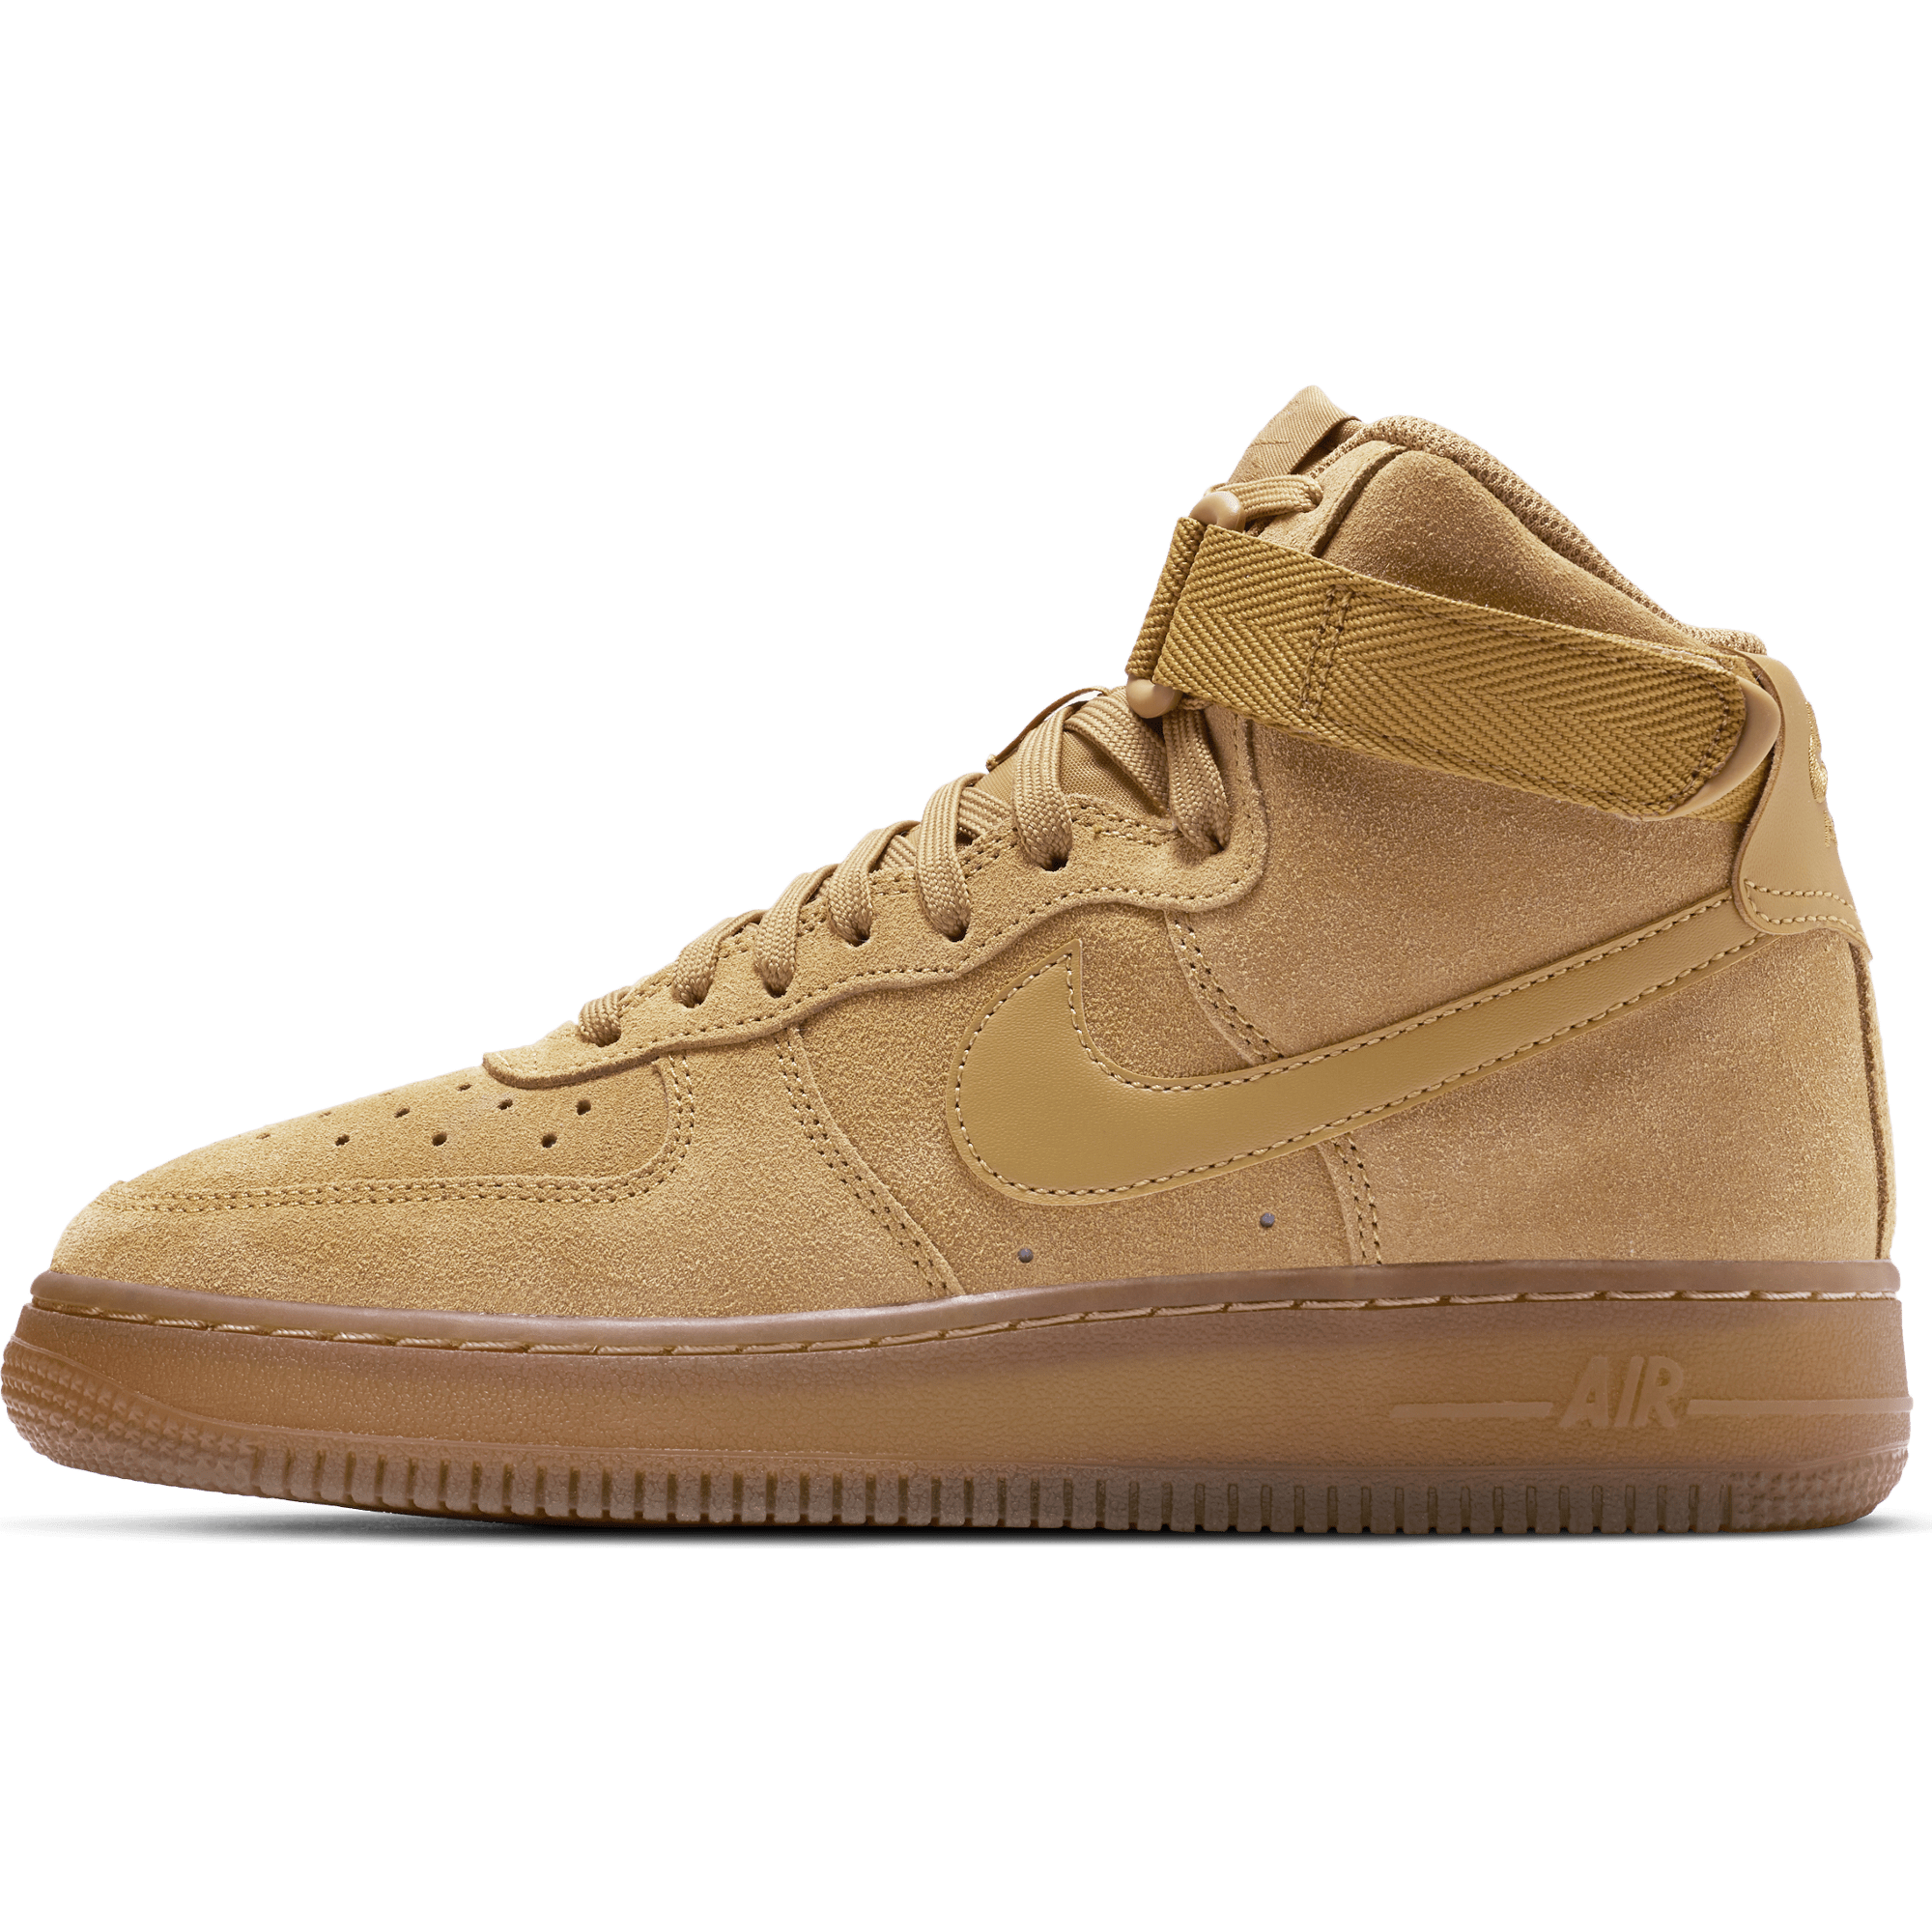 Toddler Nike Air Force 1 LV8 3 Wheat/Wheat-Gum Light Brown (BQ5487